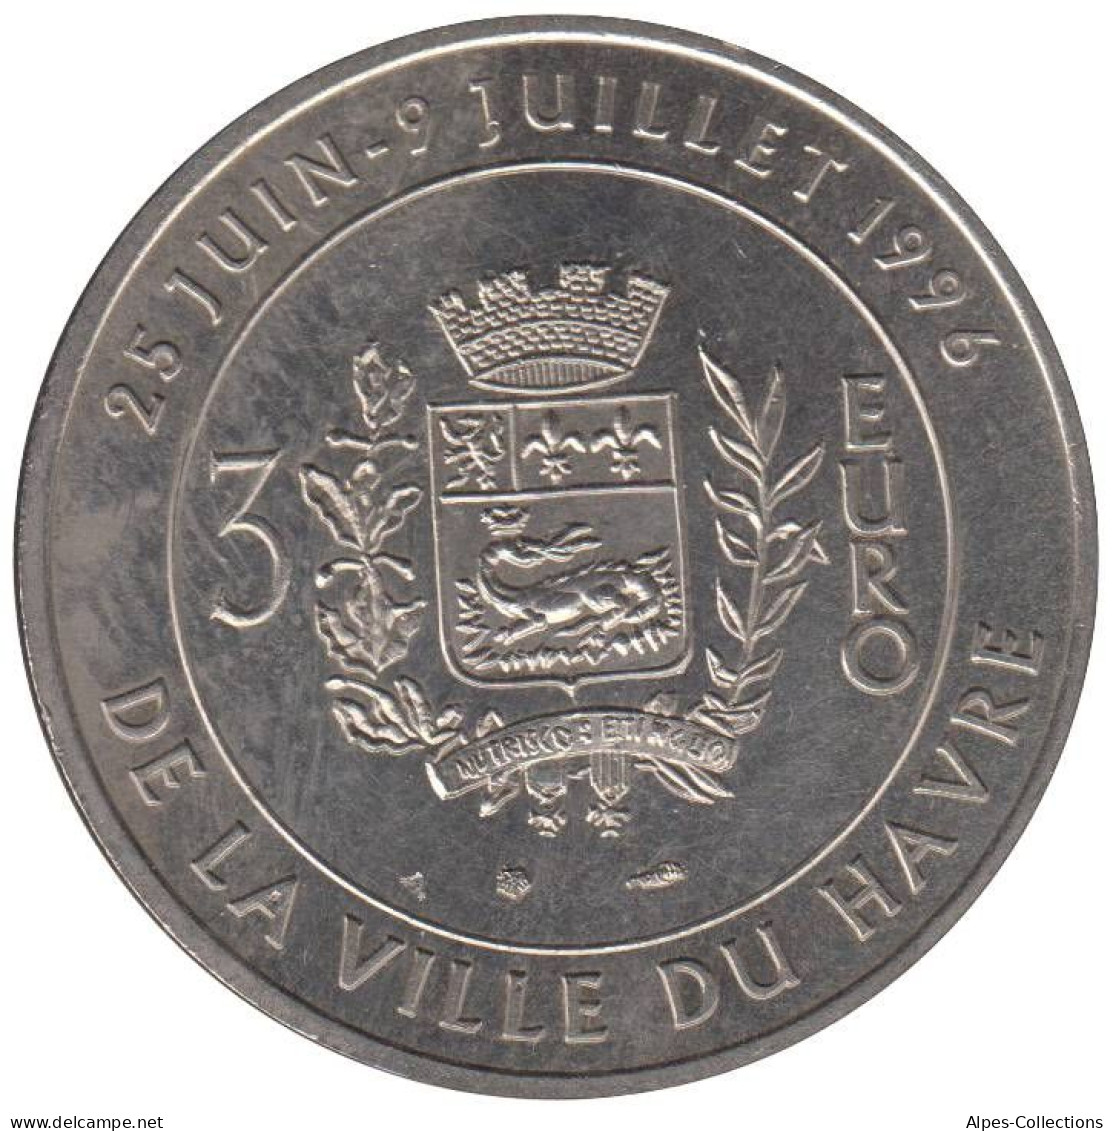 LE HAVRE - EU0030.1 - 3 EURO DES VILLES - Réf: T177 - 1996 - Euros Of The Cities